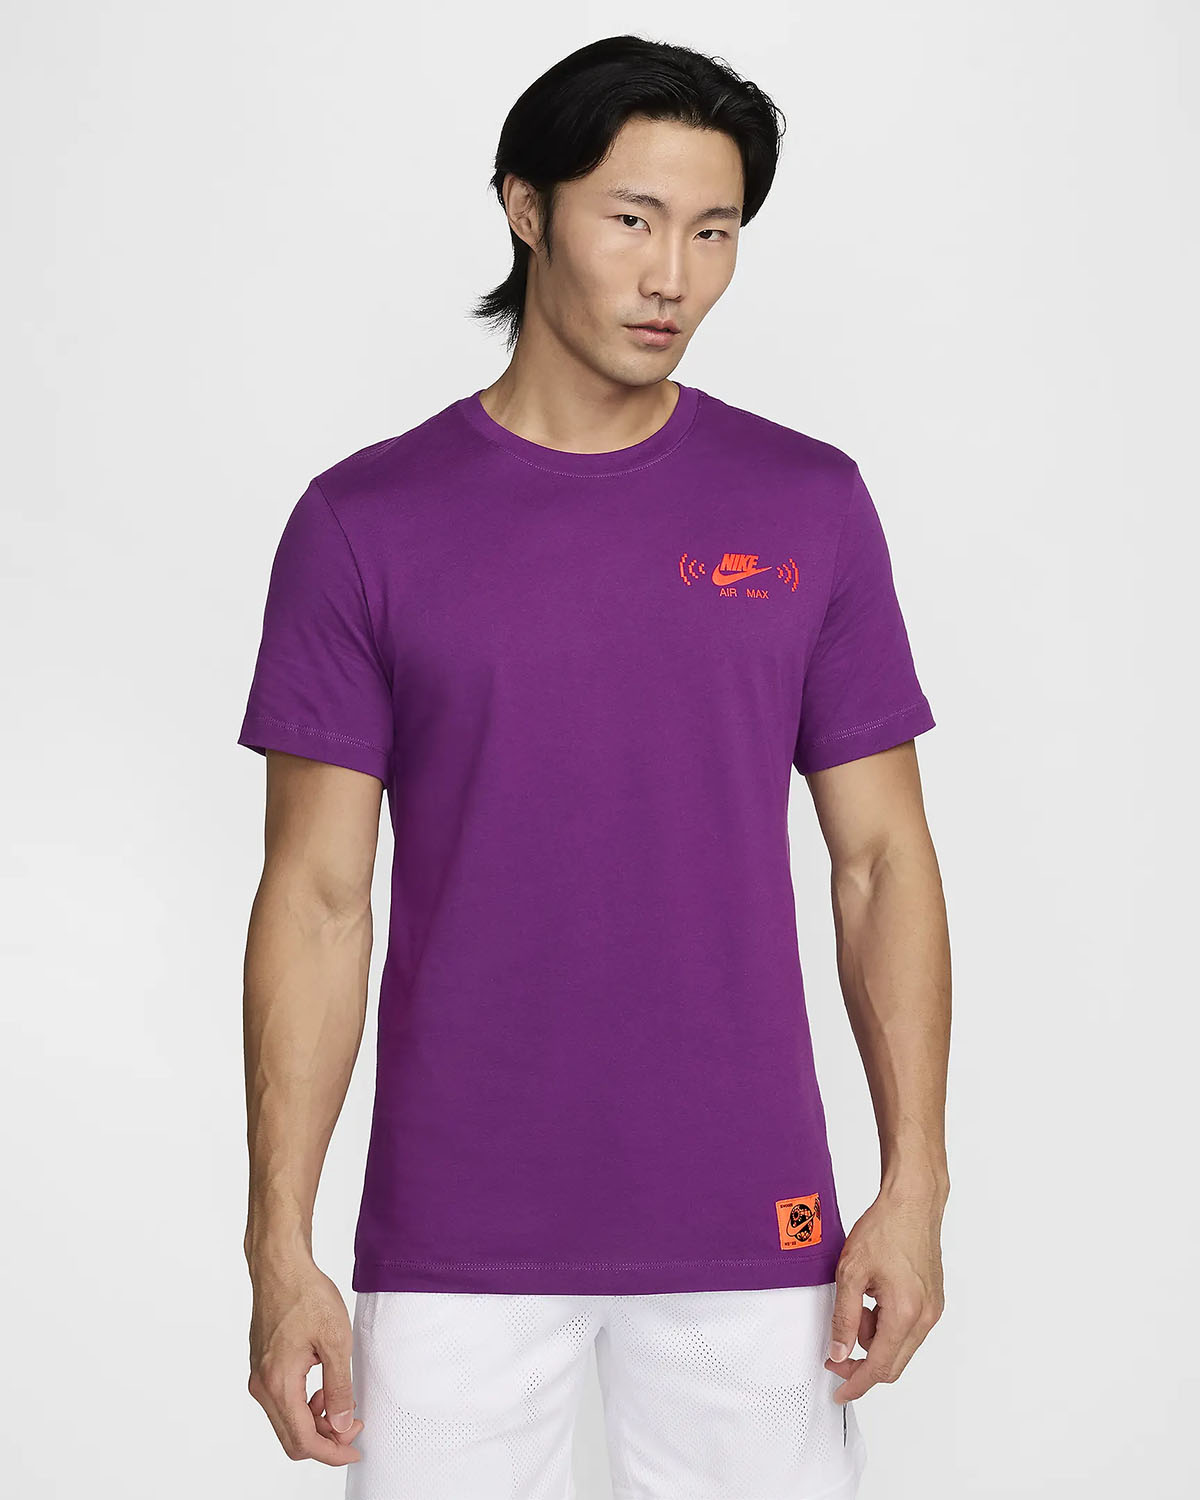 Nike Sportswear Air Max T Shirt Viotech Purple 1